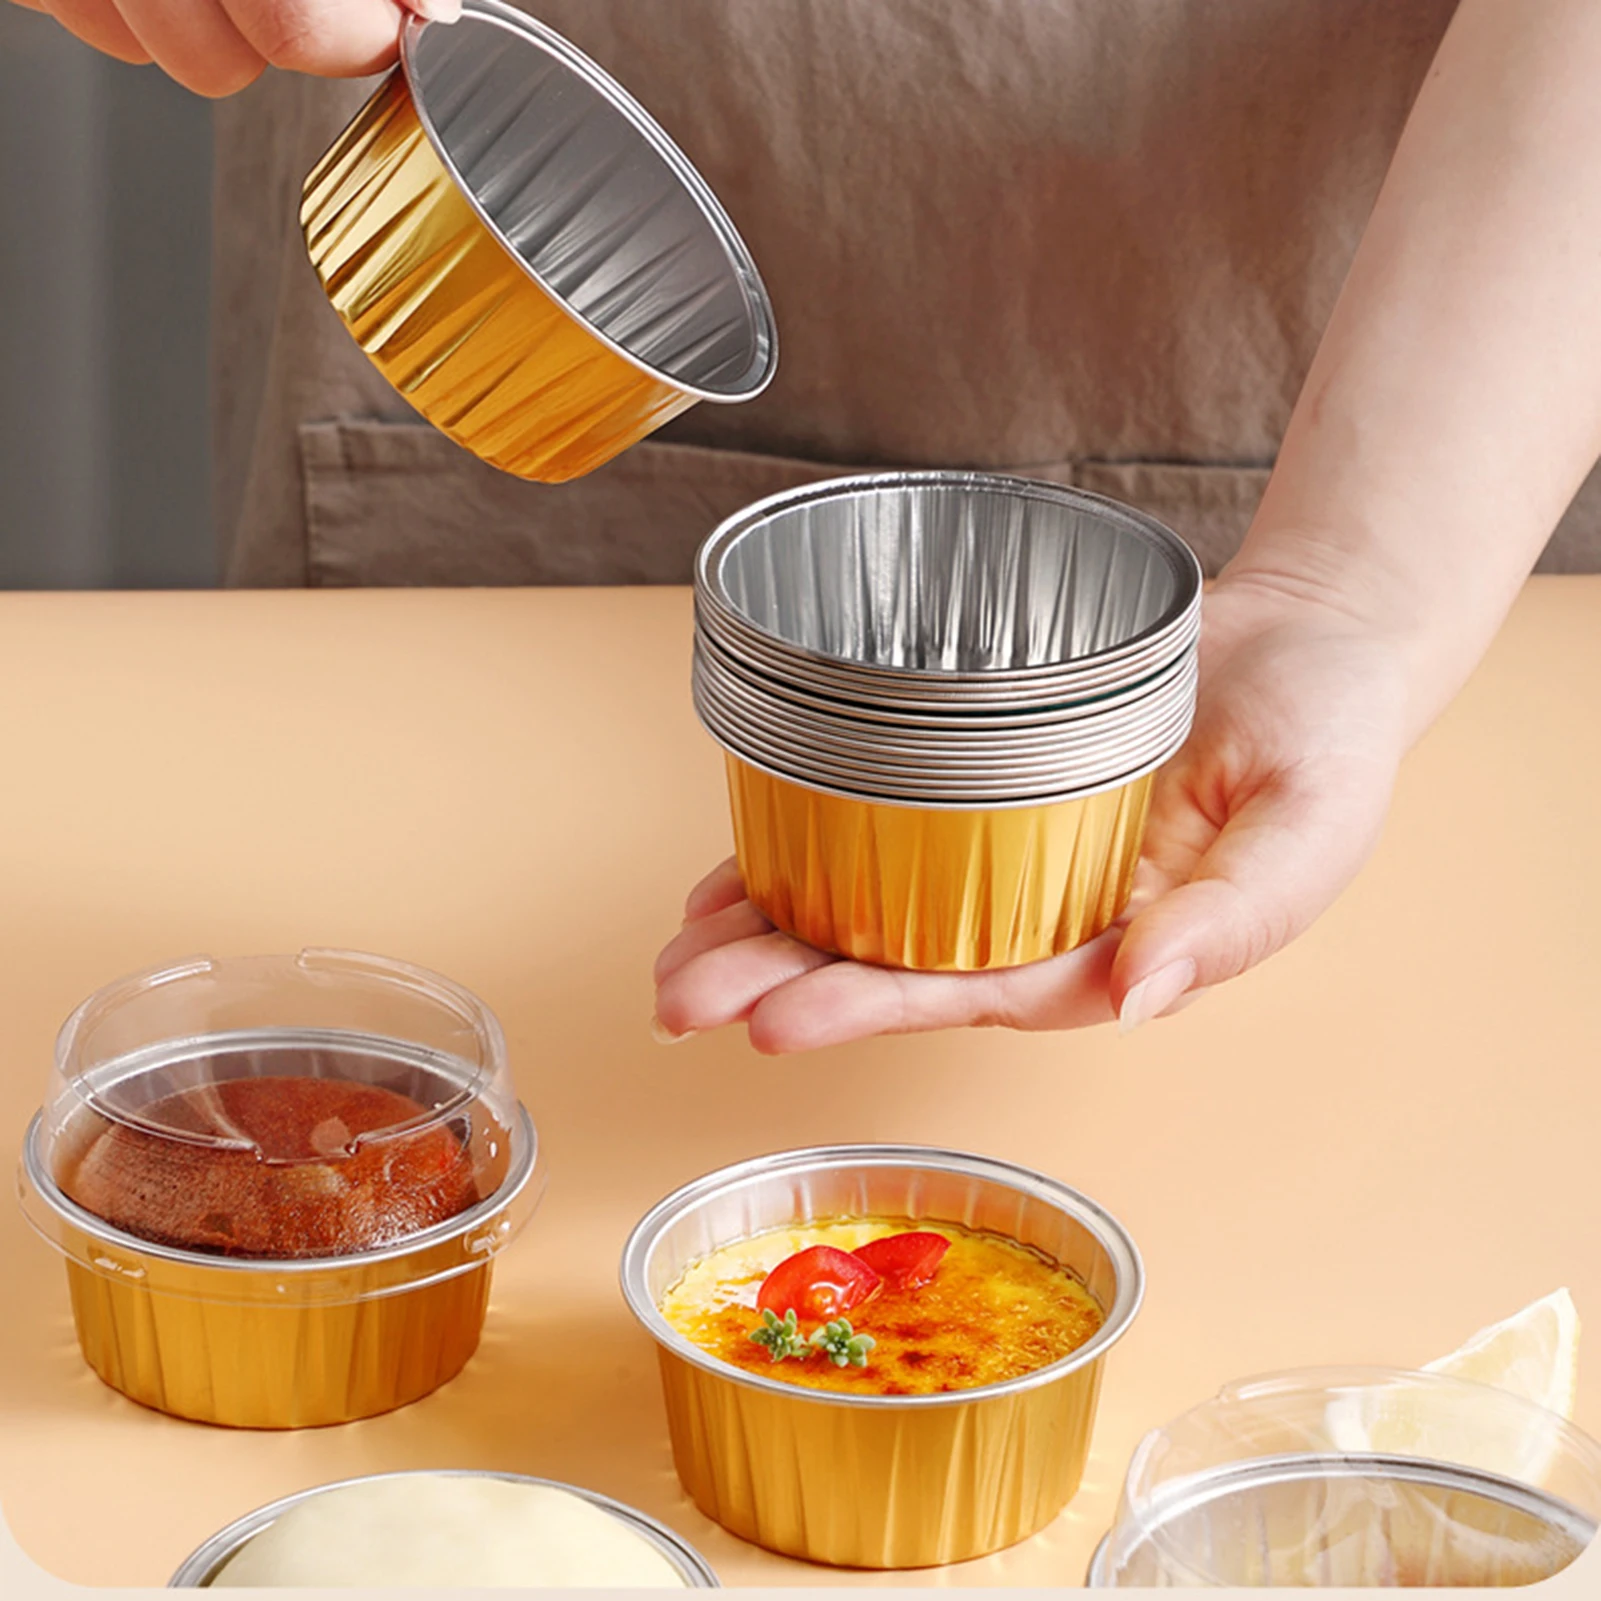 https://ae01.alicdn.com/kf/S48d747482d7a4e2daadc649fad7f8e82k/20pcs-Dessert-Cups-No-Lids-Gold-Aluminum-Foil-Baking-Cups-Holders-Cupcake-Bake-Utility-Ramekin-Clear.jpg